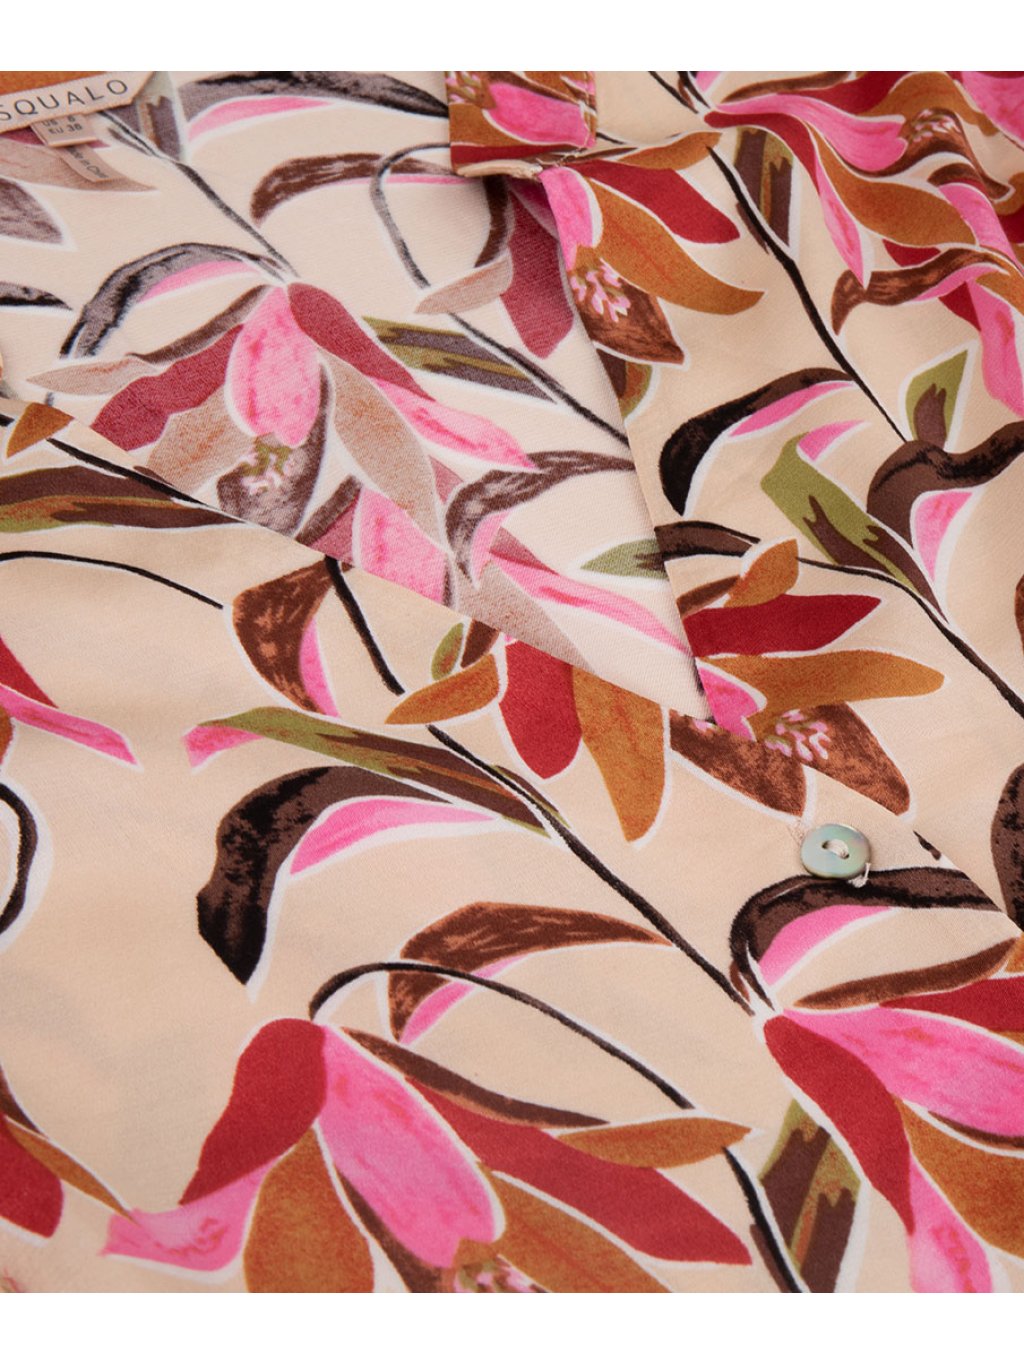 Šaty Esqualo 15008 růžové magnolie dlouhé